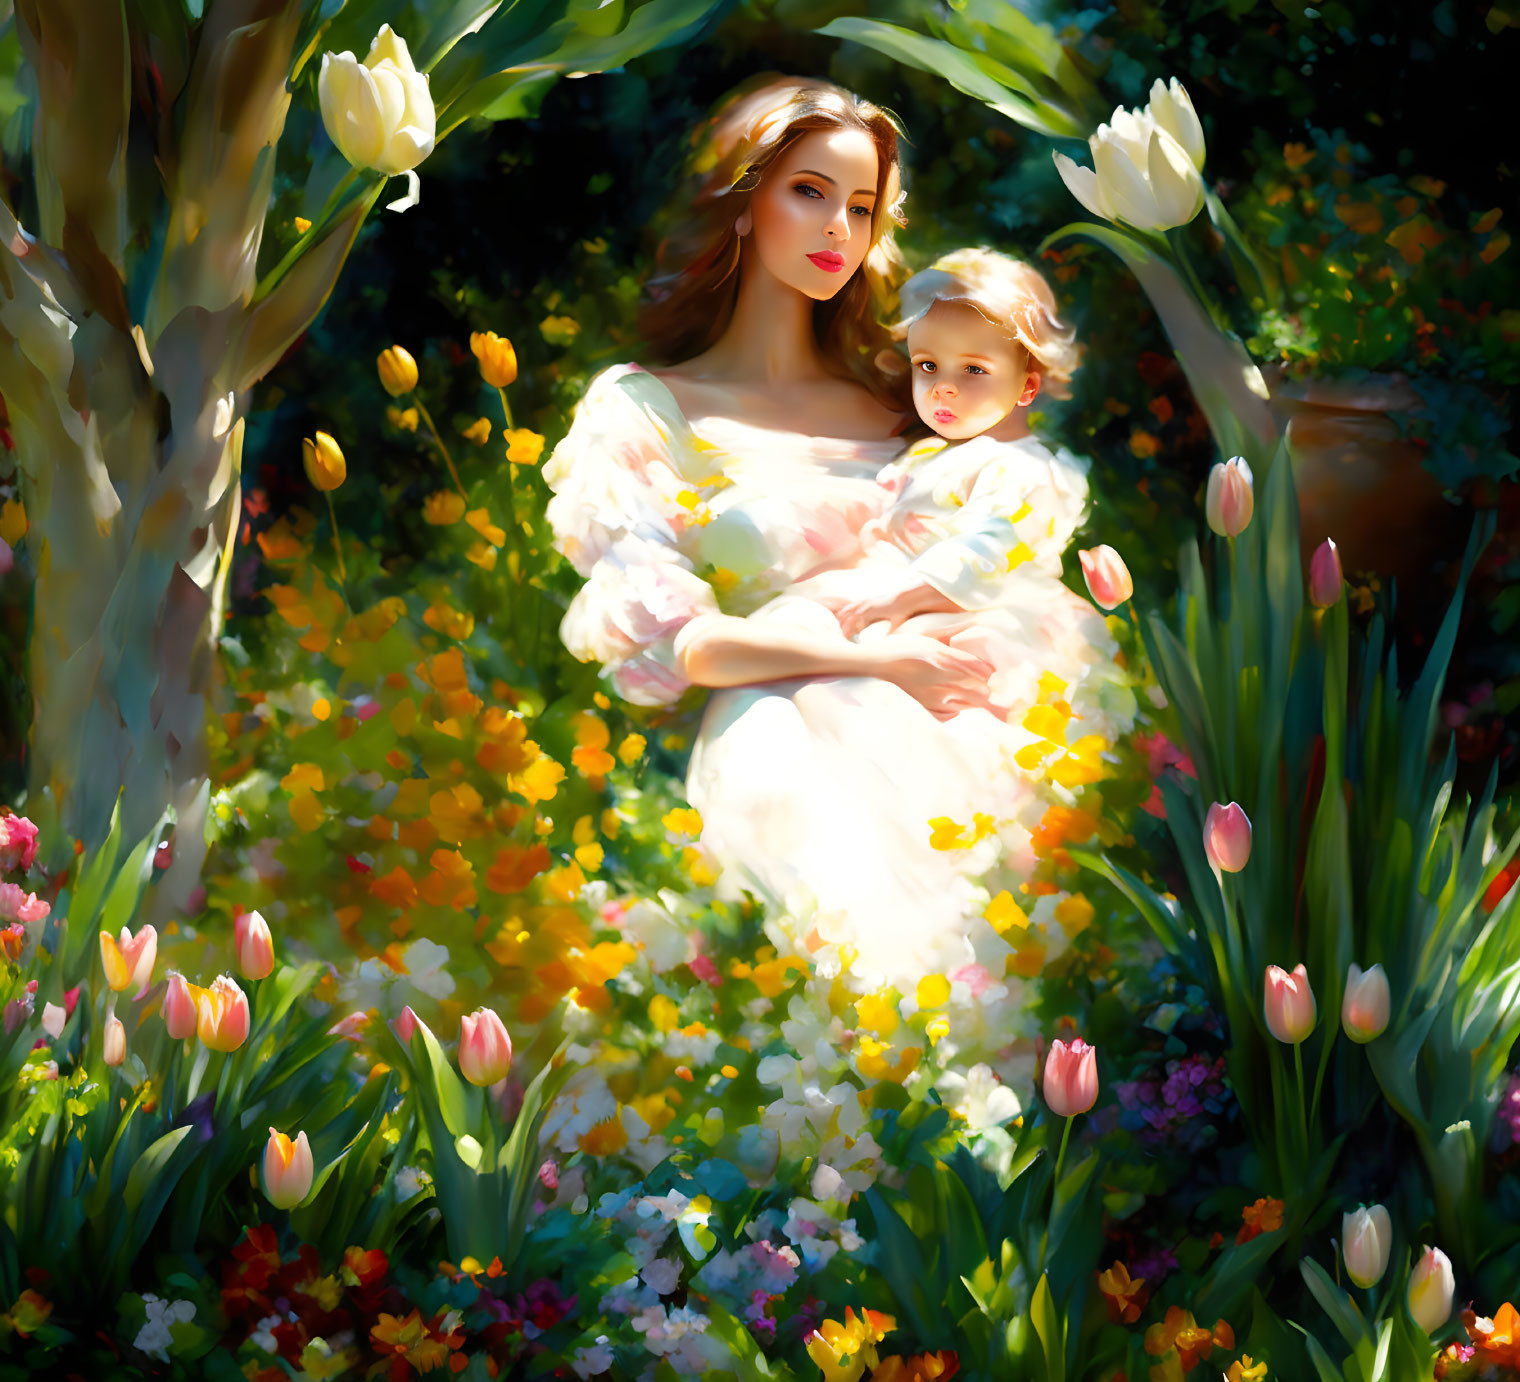 Woman in white dress holding child in vibrant garden scene